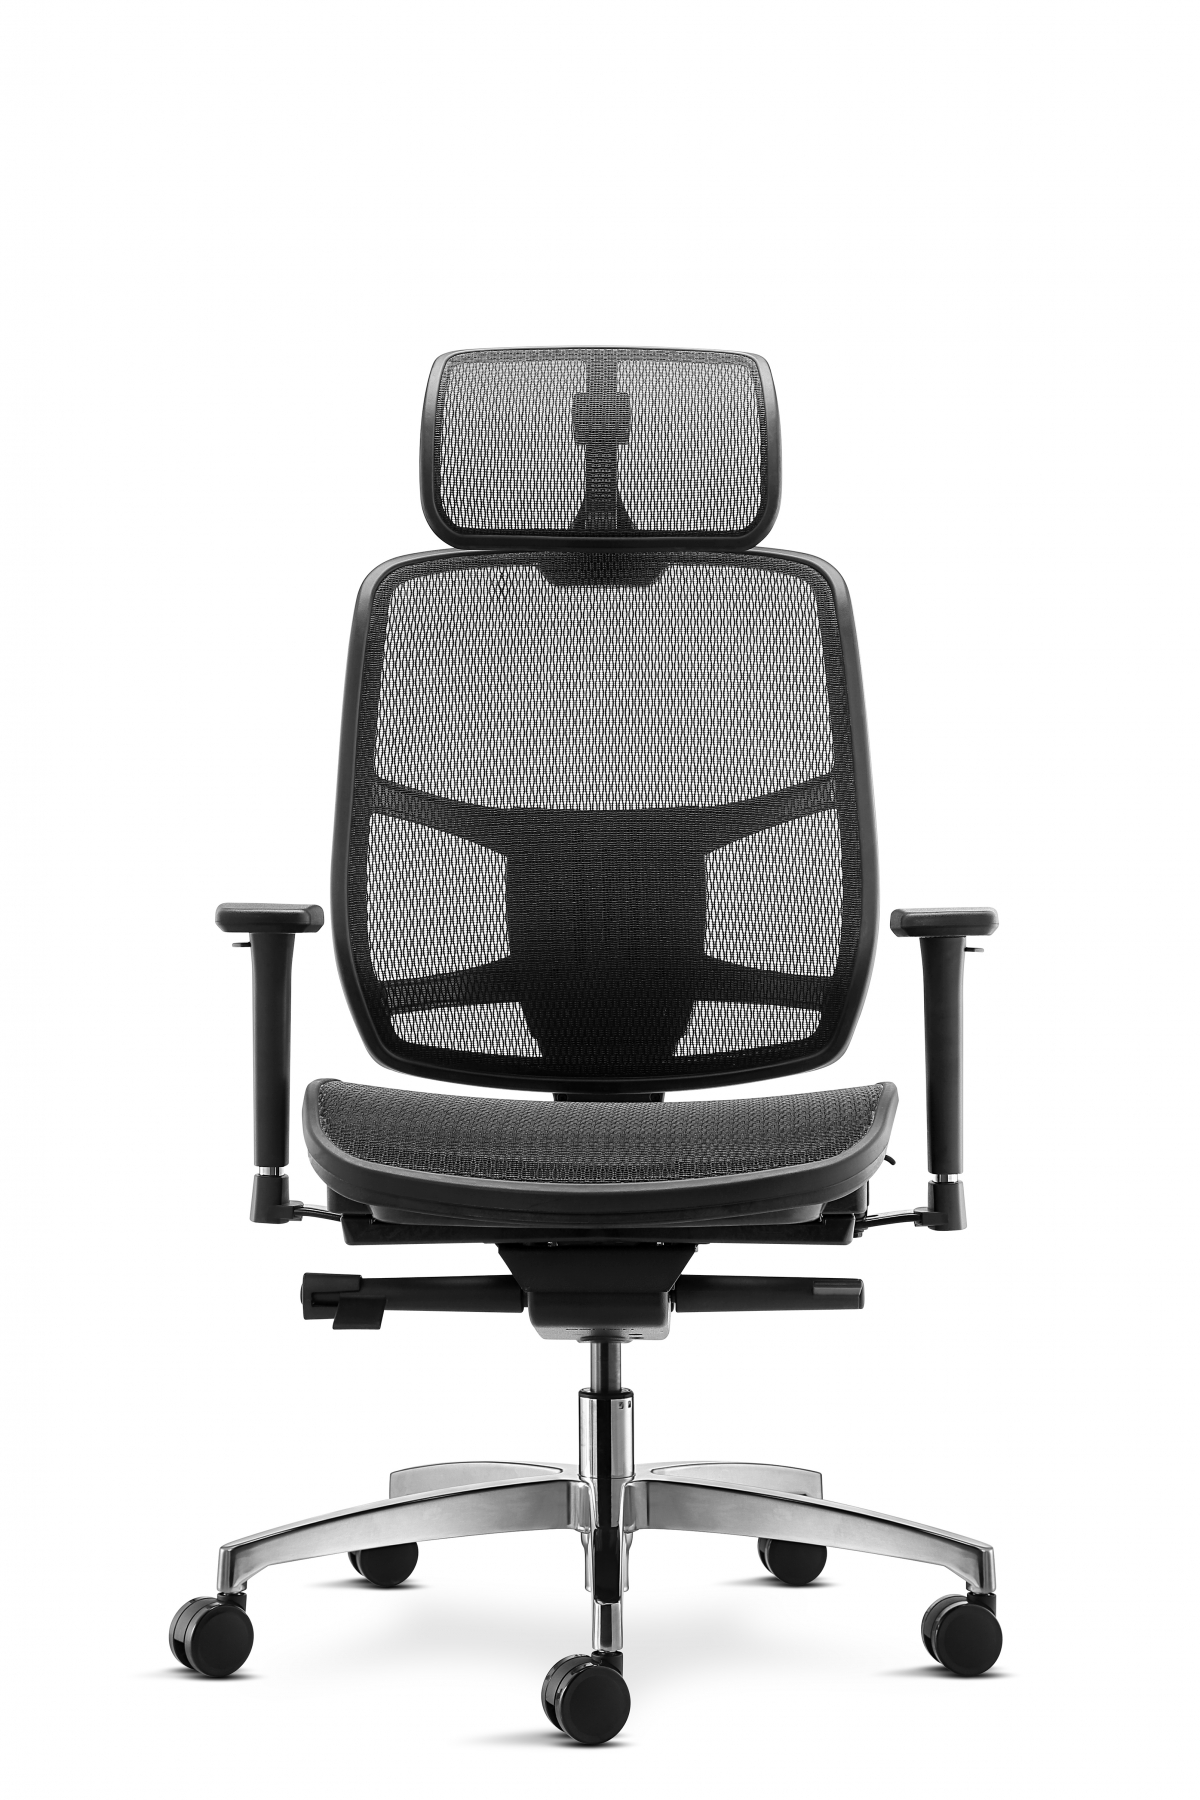 NWT02 سلسلة أبولو مقعد شبكي كرسي مكتب مريح-NOWA-China أثاث مكتبي ، أثاث صيني مصنوع حسب الطلب ،